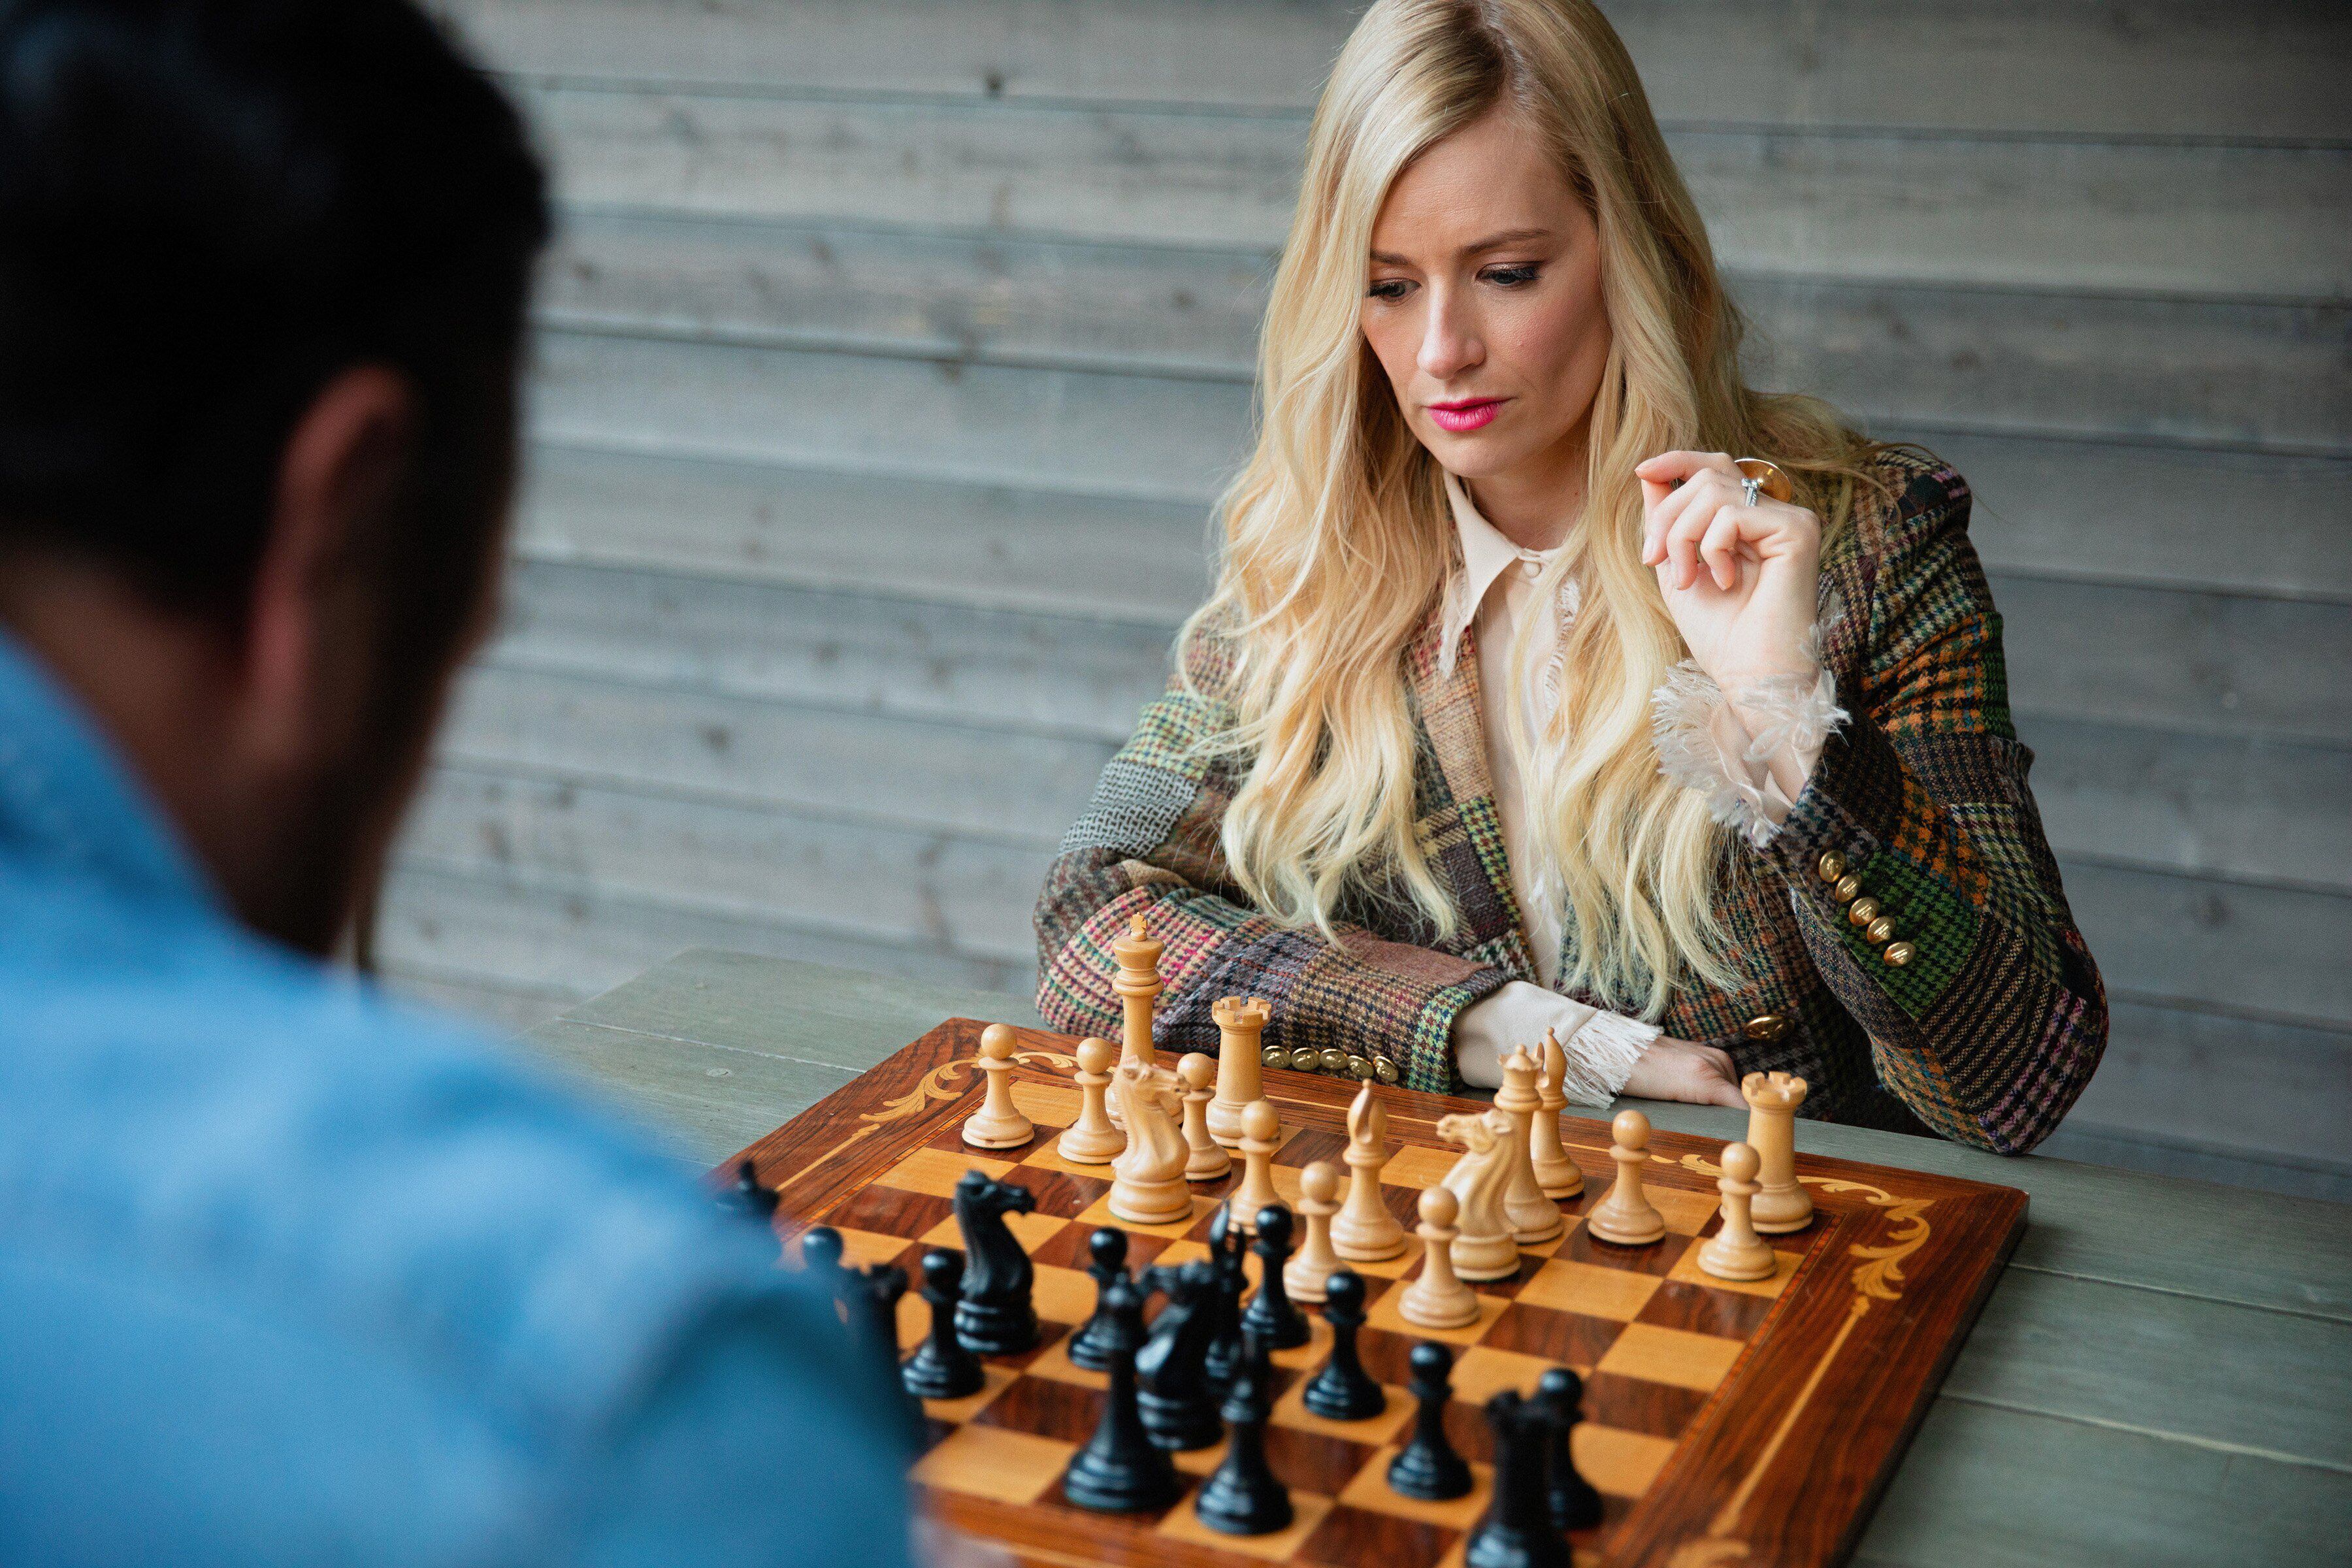 Viu O Gambito da Rainha e quer jogar xadrez? O que você precisa saber